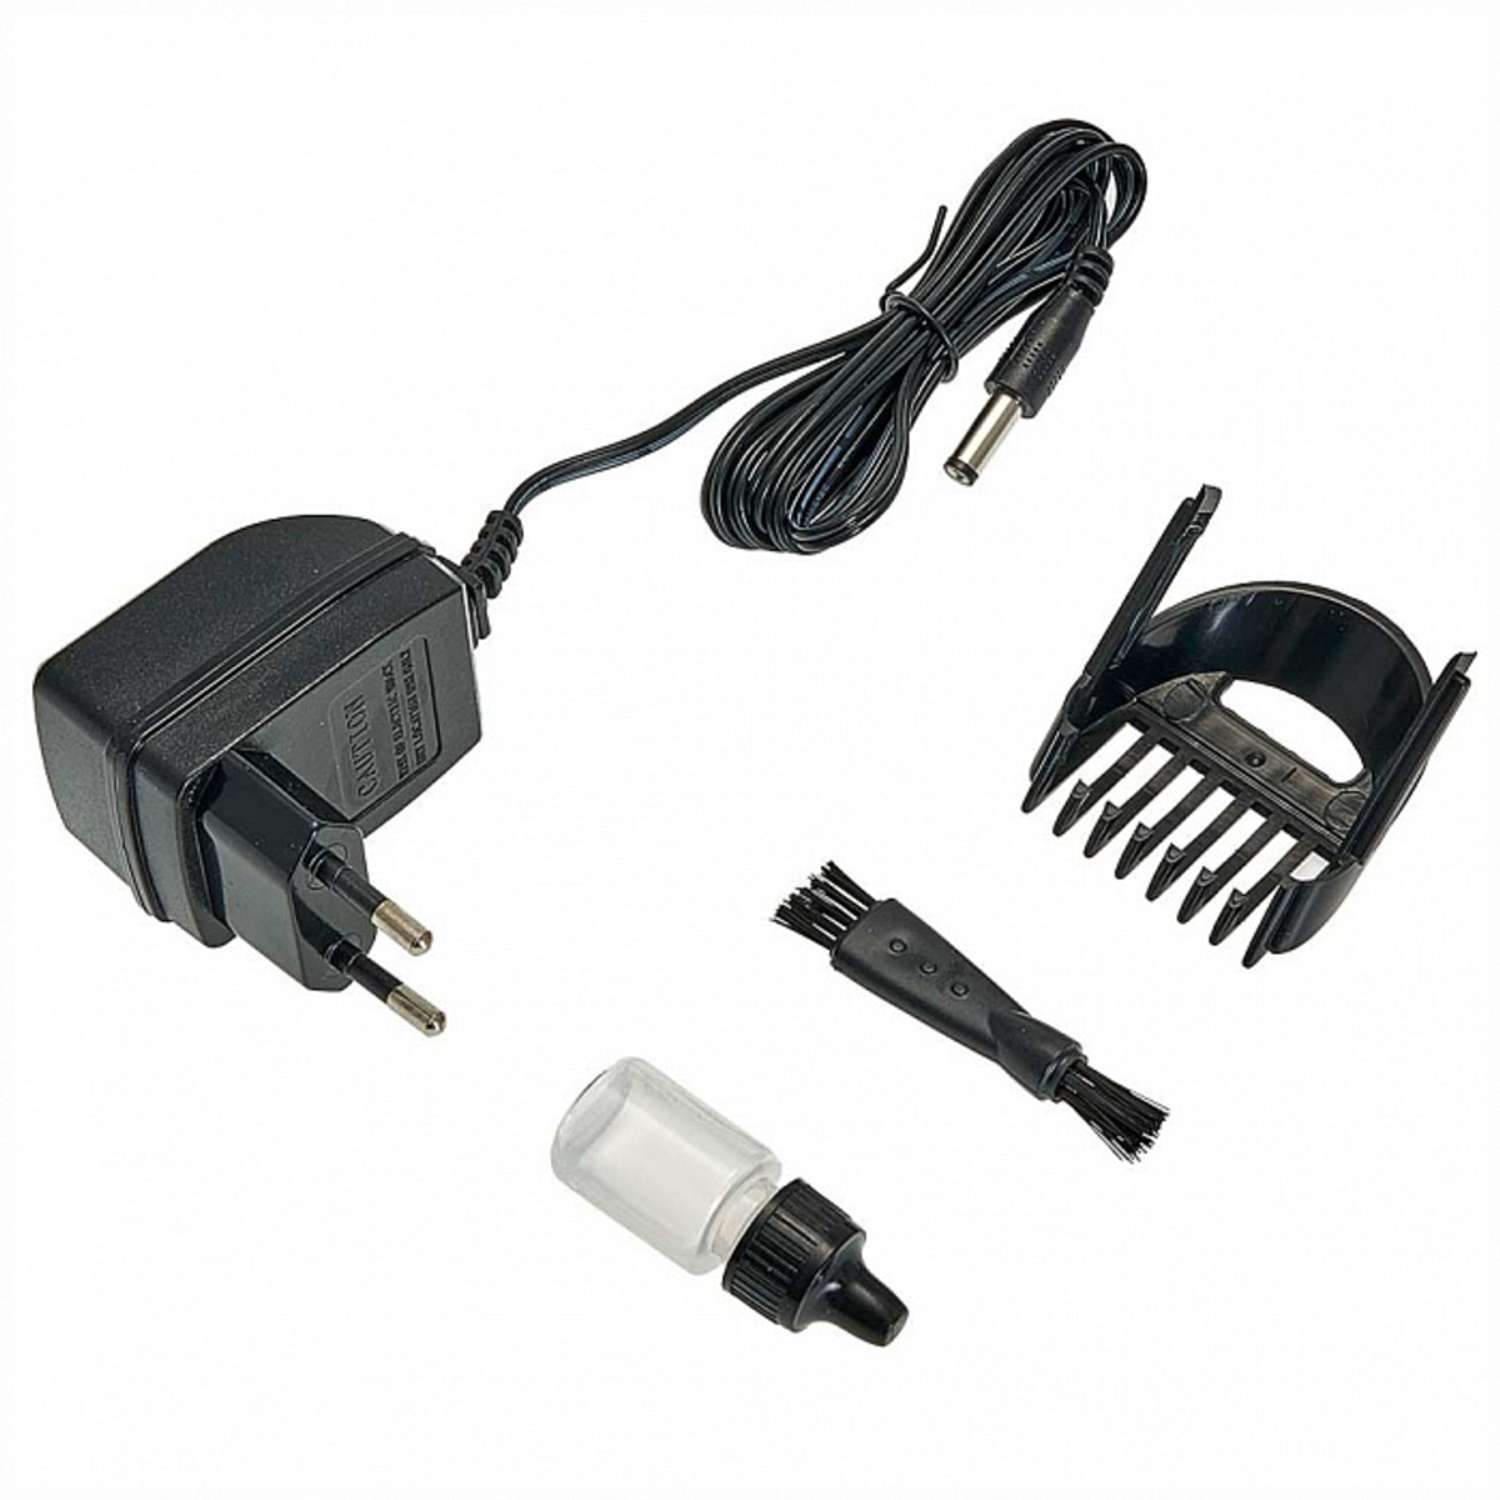 Машинка для стрижки волос Delta DL-4060A черный 3 Вт аккумулятор филировка съемный гребень - фото 2